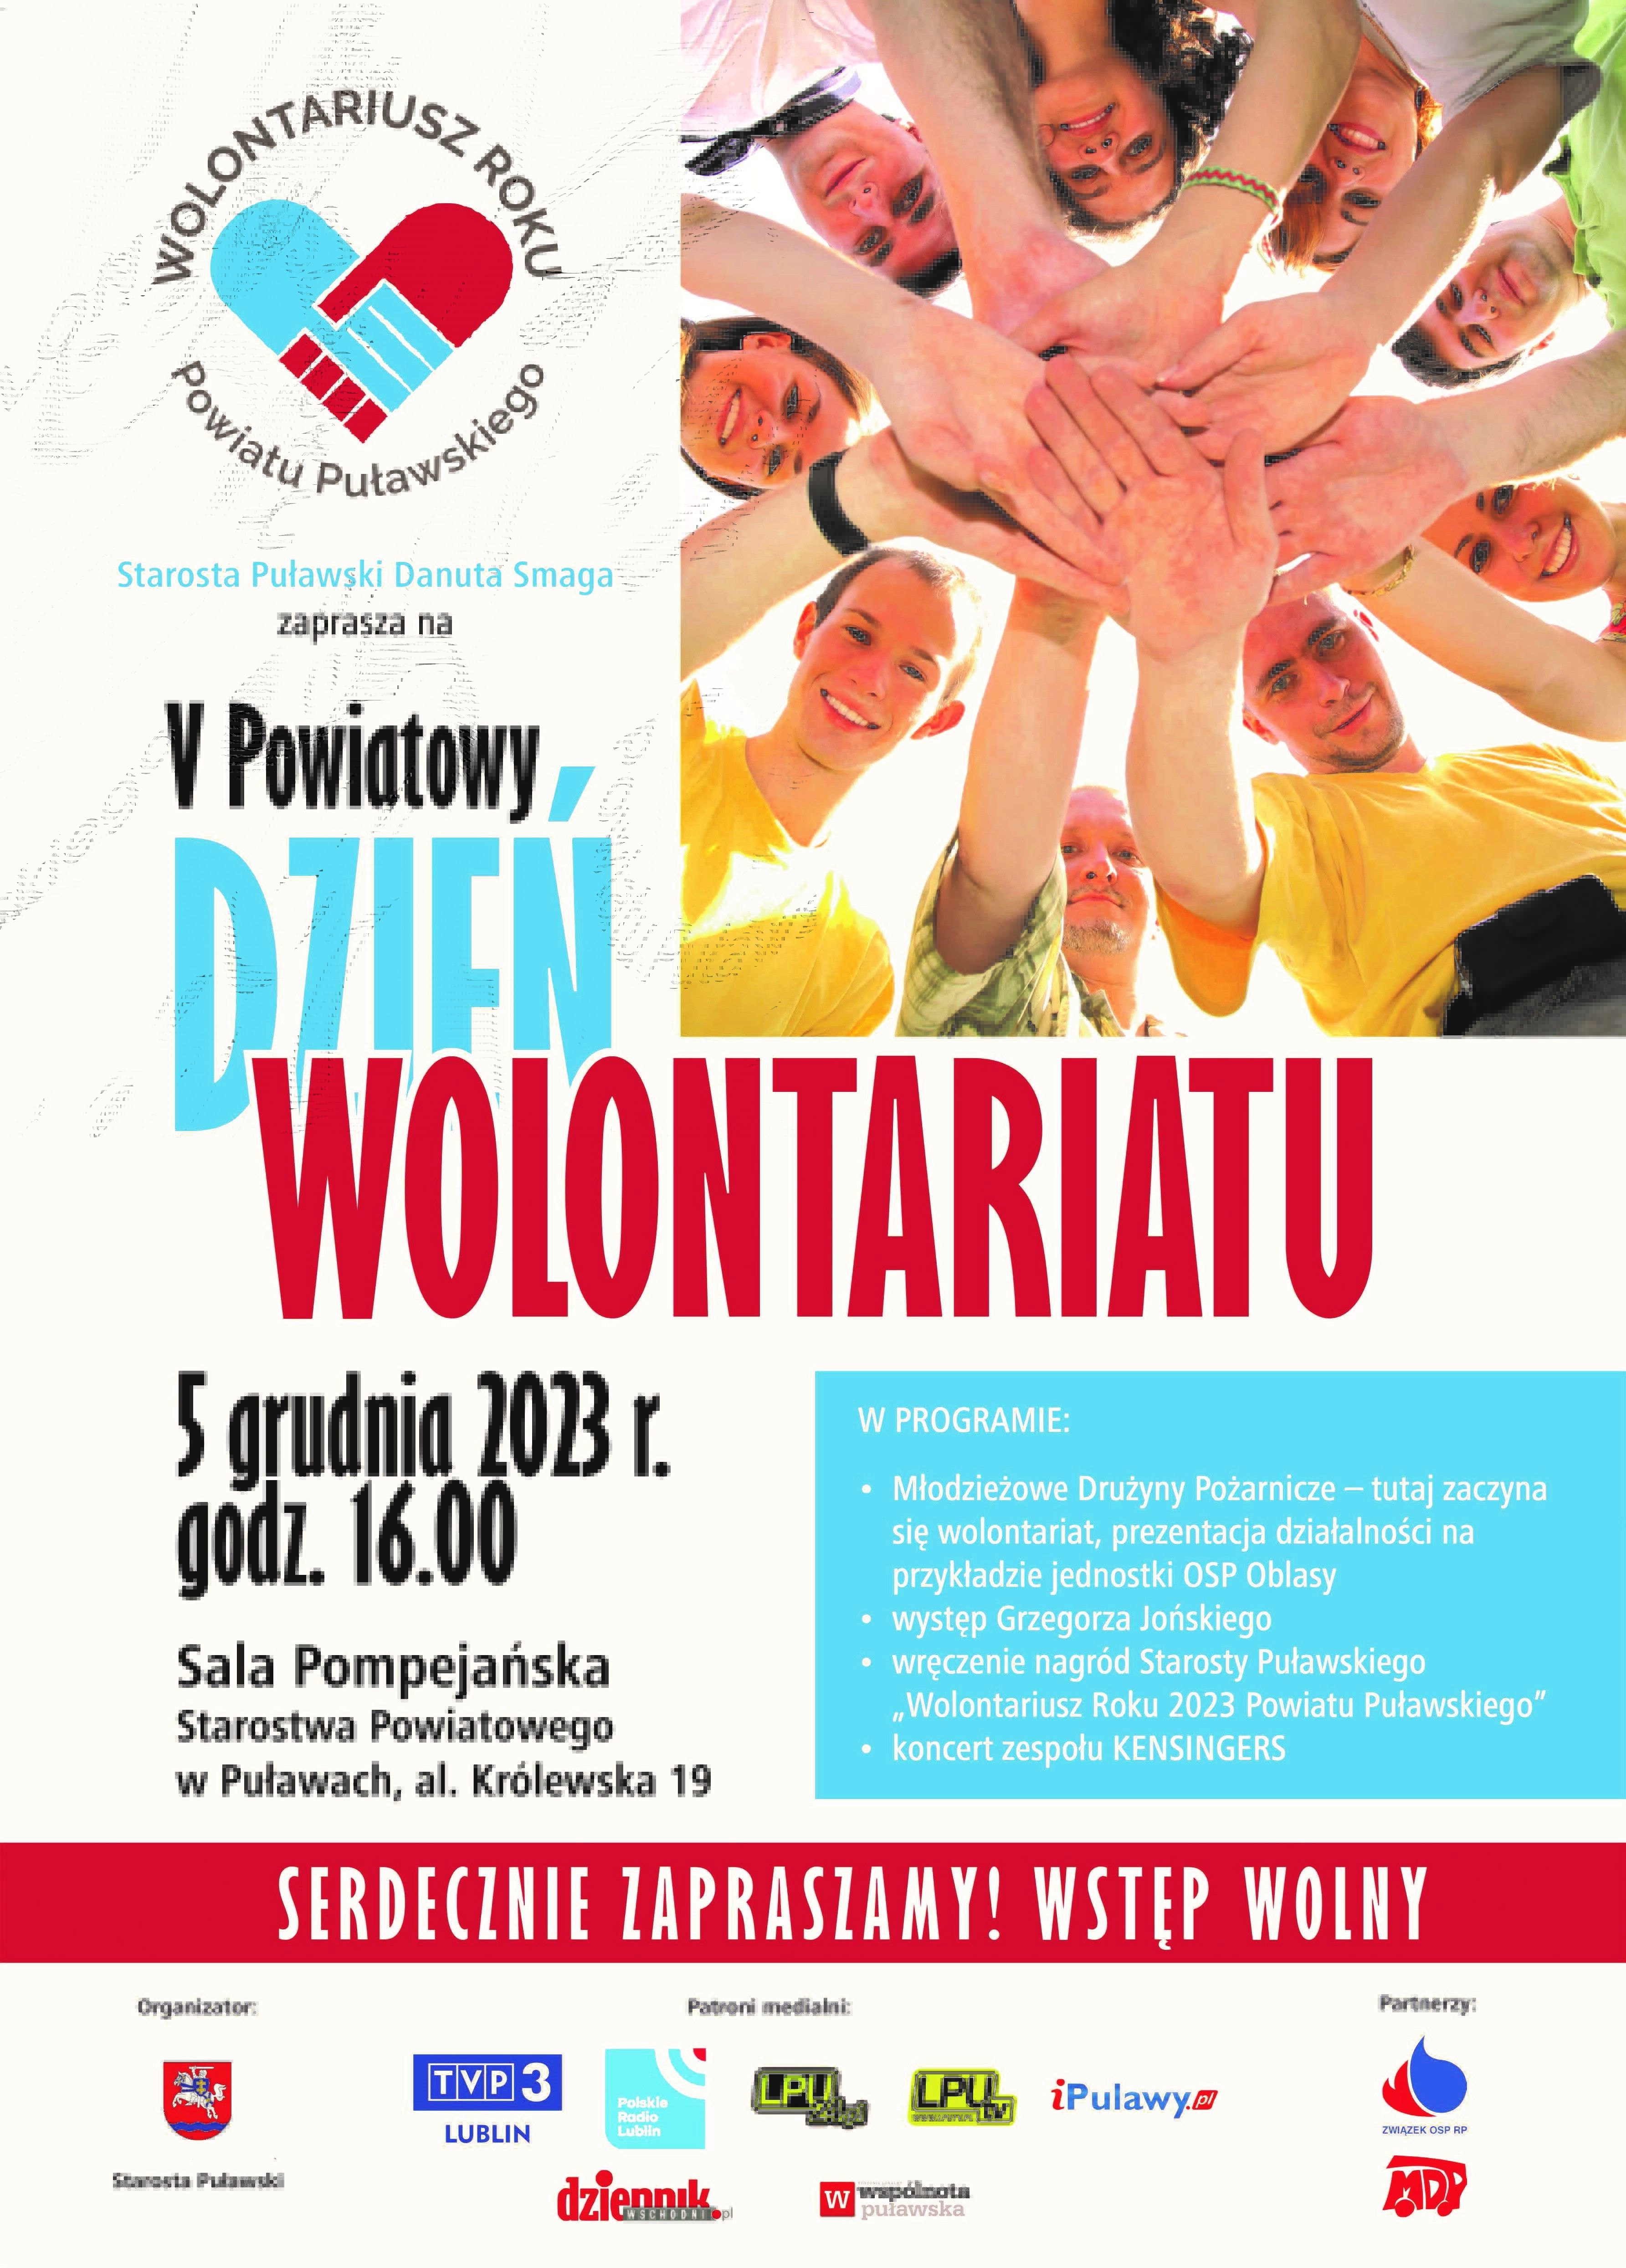 Plakat promujący "V Puławski Dzień Wolontariatu" z ludźmi trzymającymi się za ręce, tworząc krąg nad napisami, z informacjami o wydarzeniu i sponsorach.